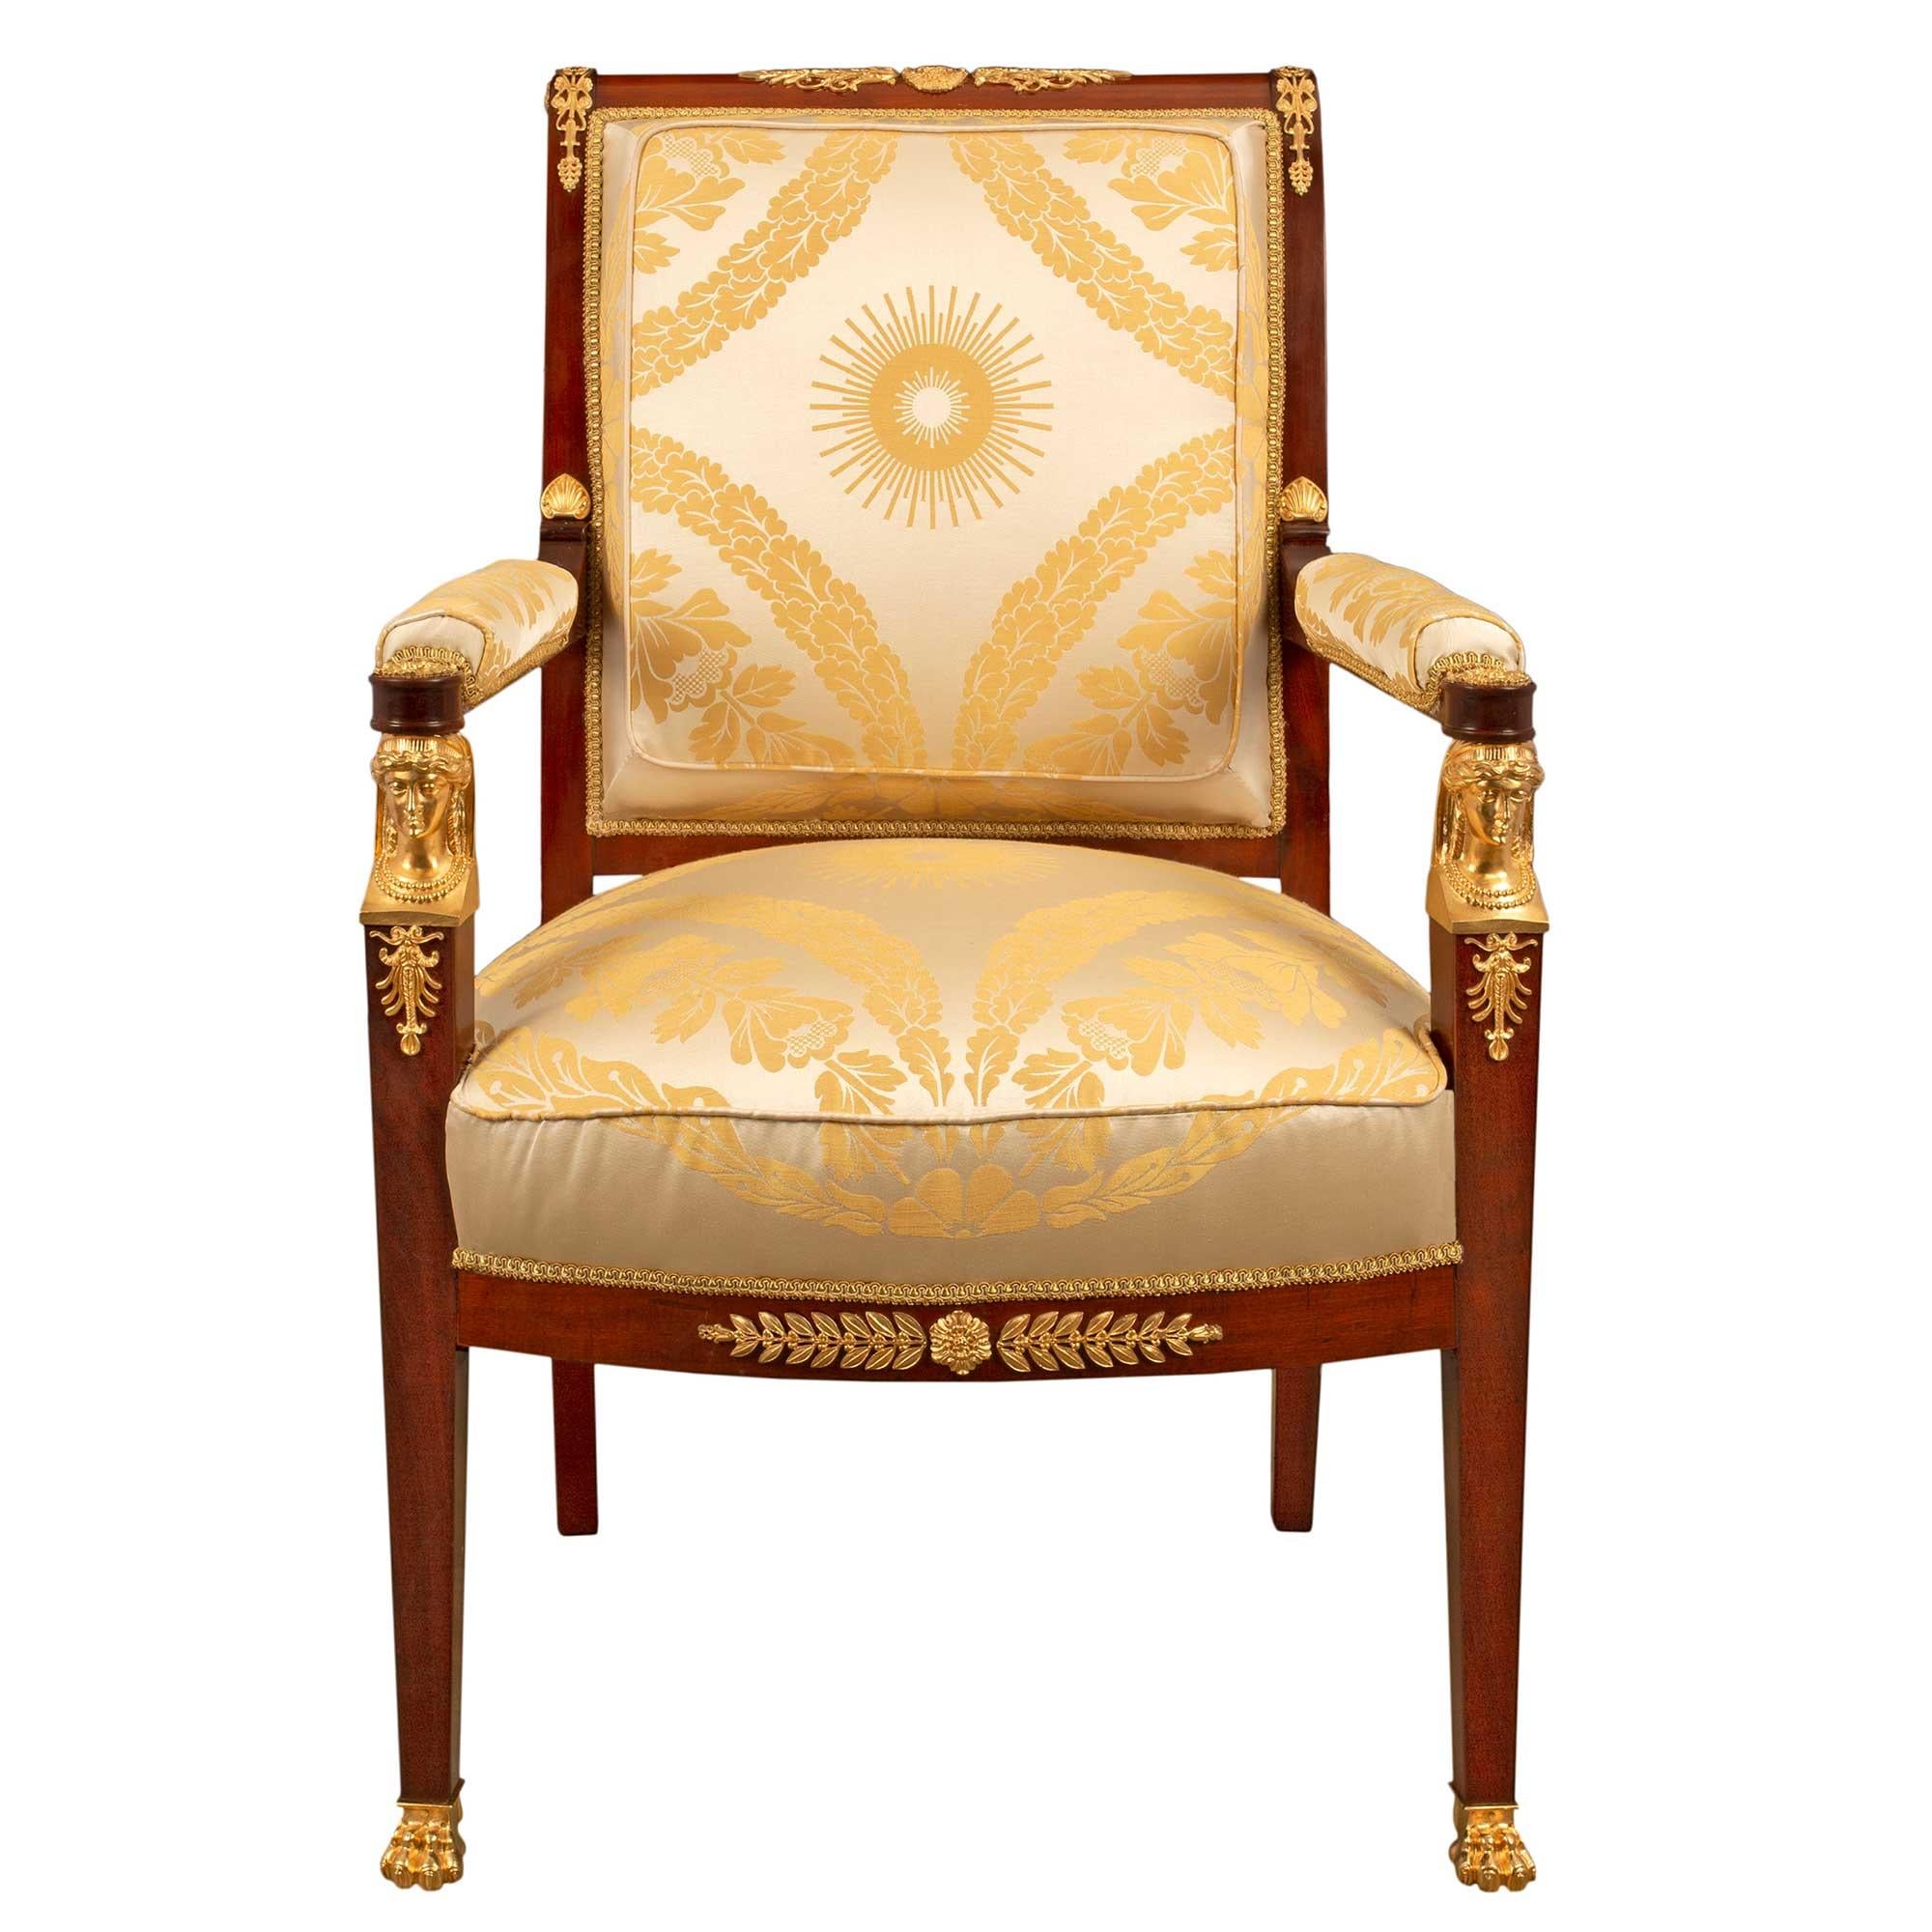 Une très belle paire de fauteuils de style Empire français du milieu du 19e siècle en acajou et bronze doré. La paire est surélevée par des pieds fuselés carrés à l'avant, avec des pieds en bronze doré à pattes et des cariatides exquises et